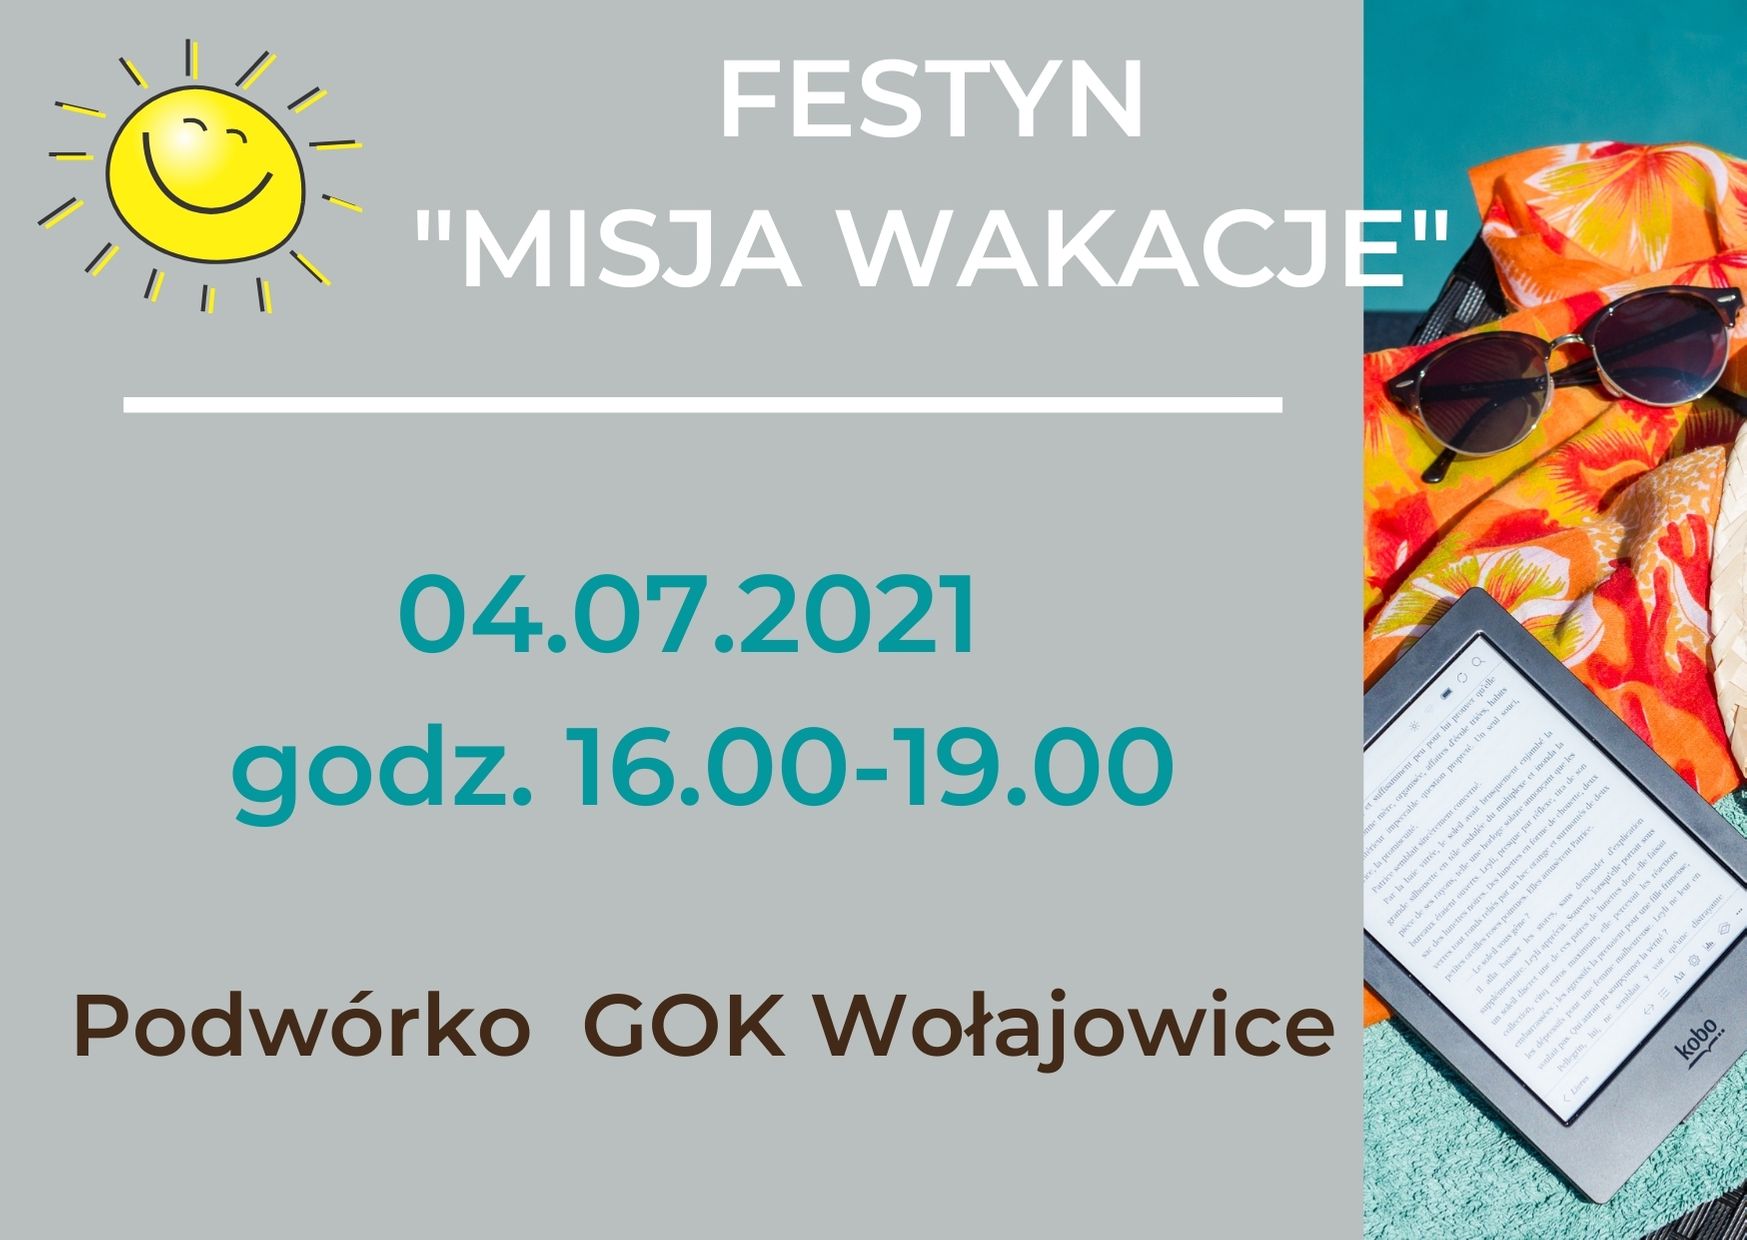 Grafika przedstawia okulary, chustę, notatnik oraz informację : "Festyn Misja Wakacje", 04.07.2021, godz. 16.00-19.00, podwórko GOK Wołajowice. W lewym górnym rogu znajduje się słoneczko.